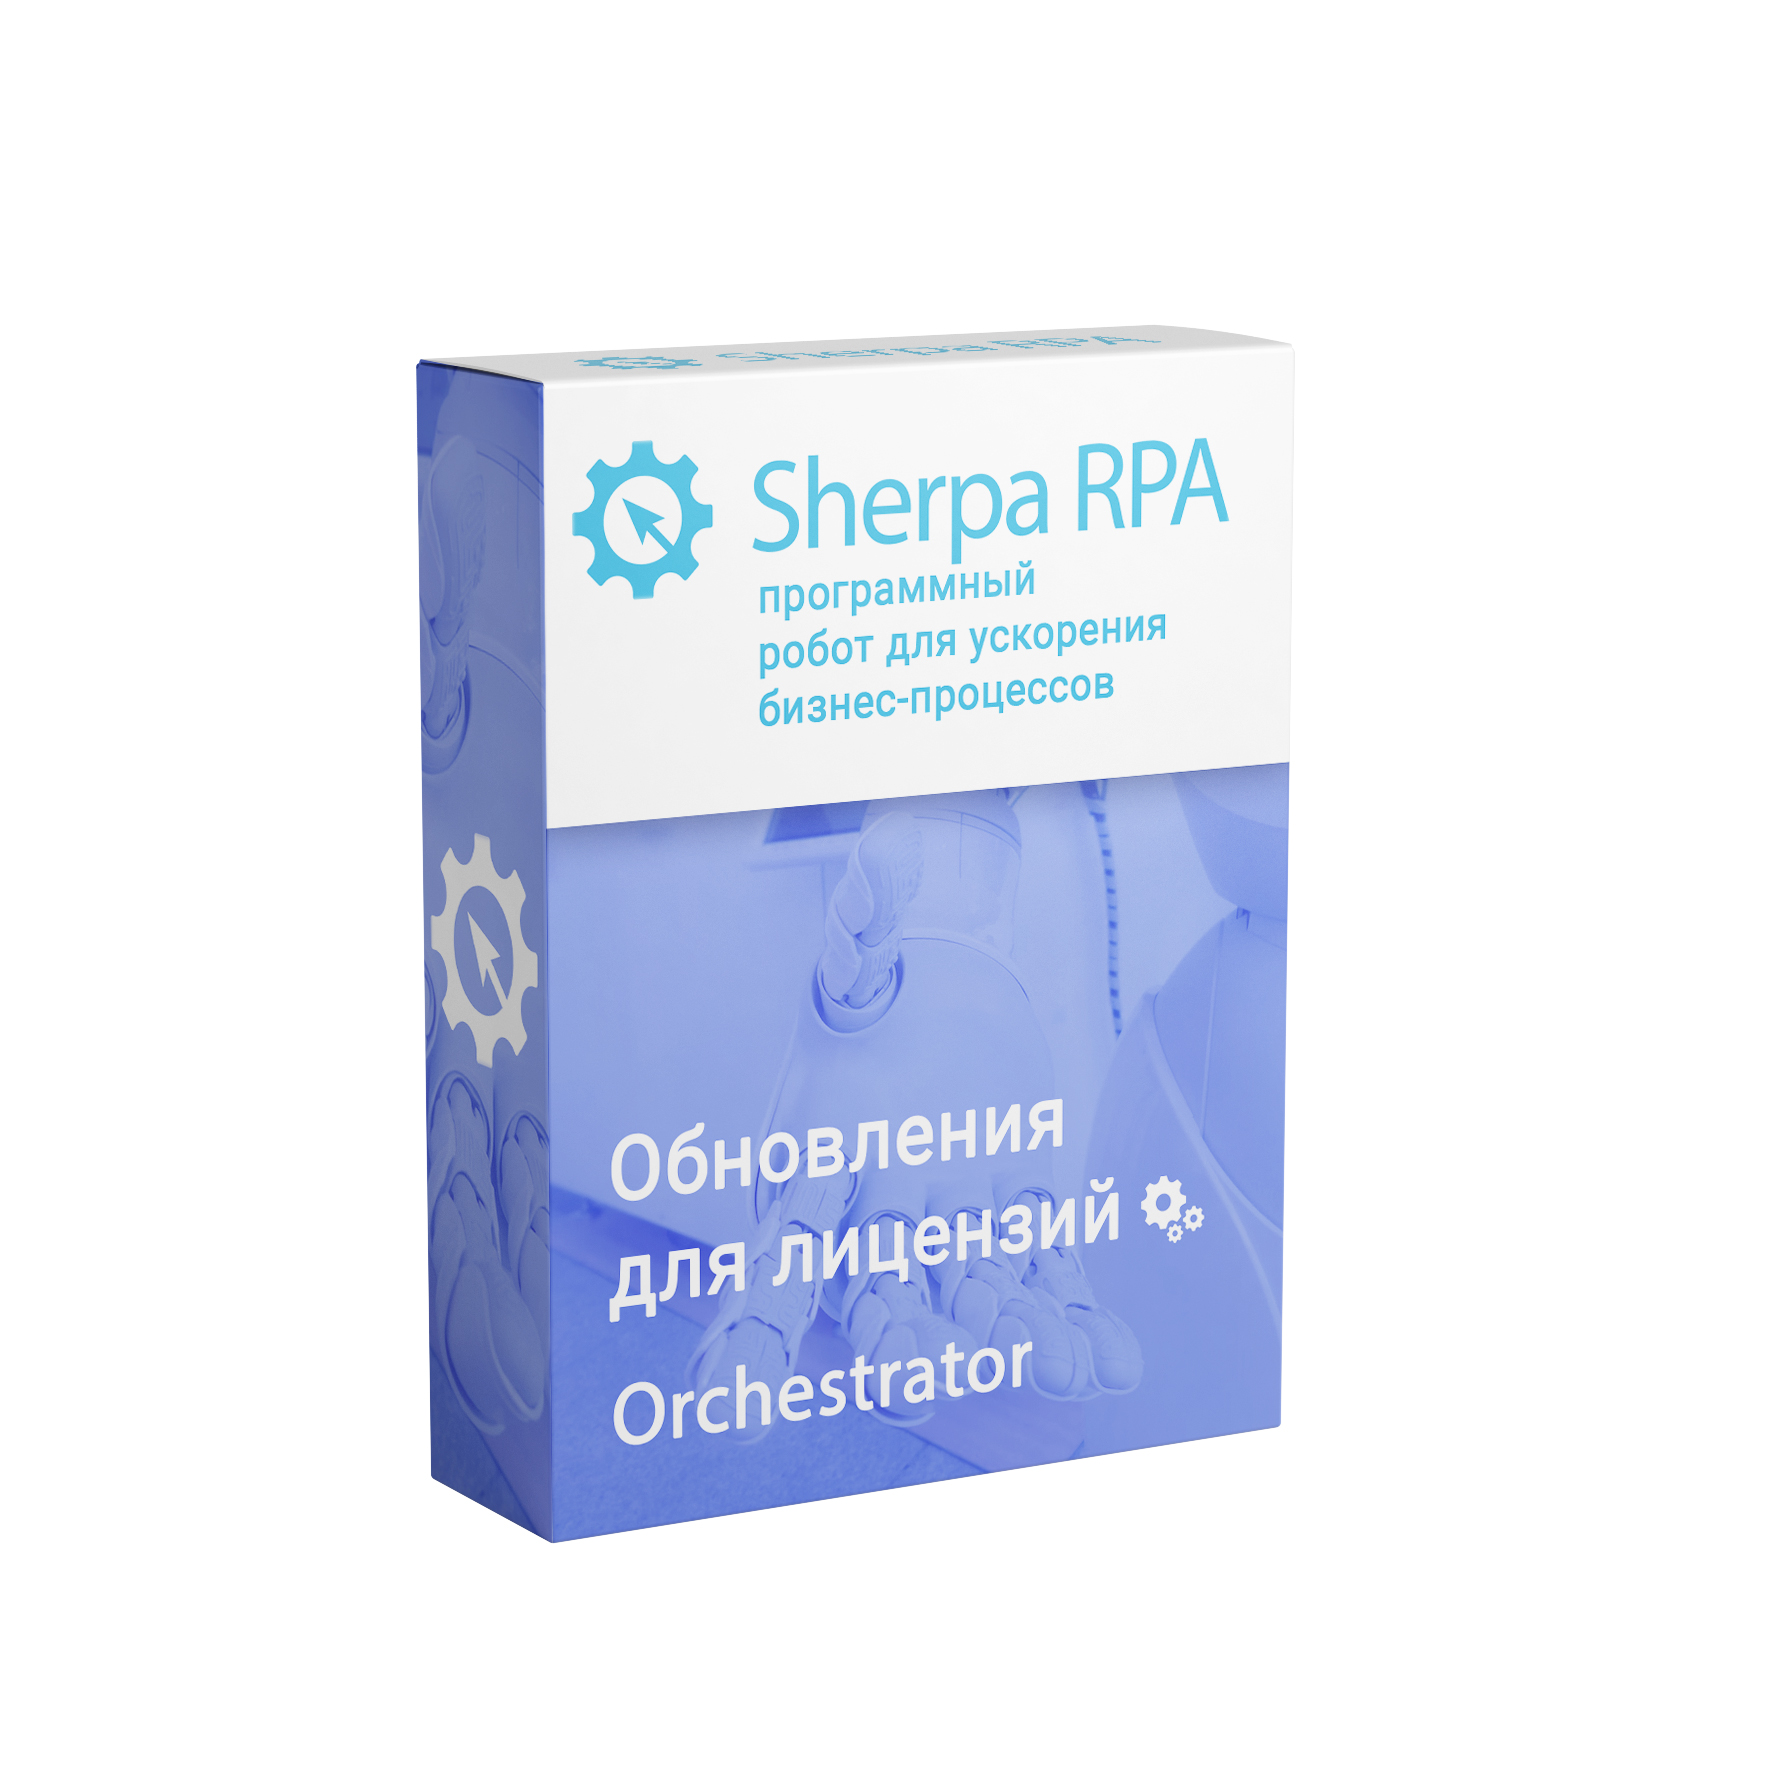 Обновление Sherpa RPA (Orchestrator, Бессрочная)второй и каждый следующий год использования